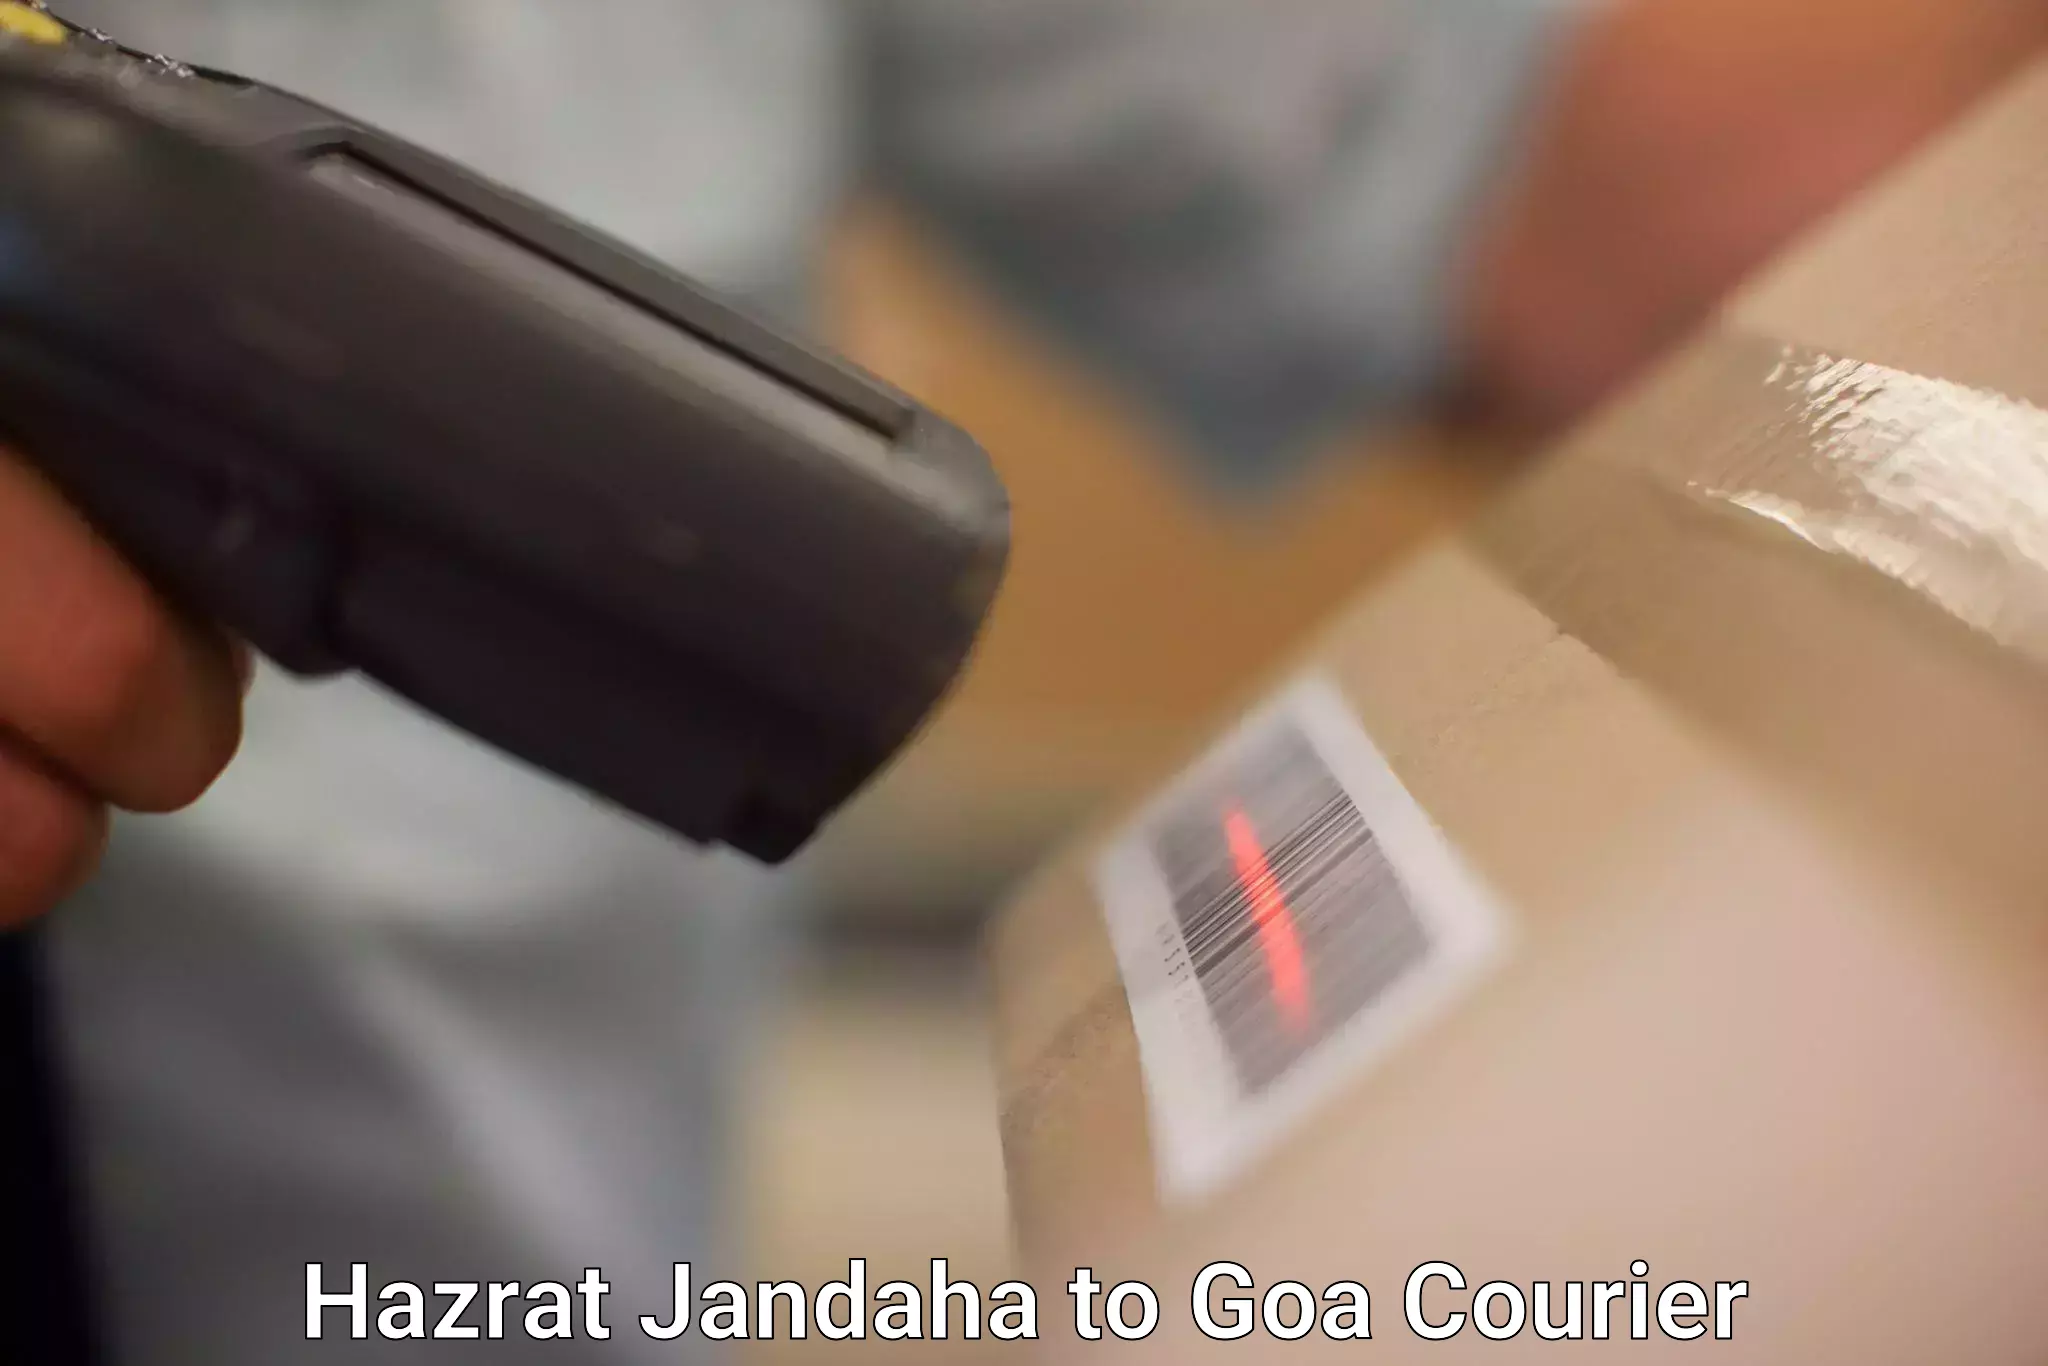 Courier service comparison Hazrat Jandaha to Goa